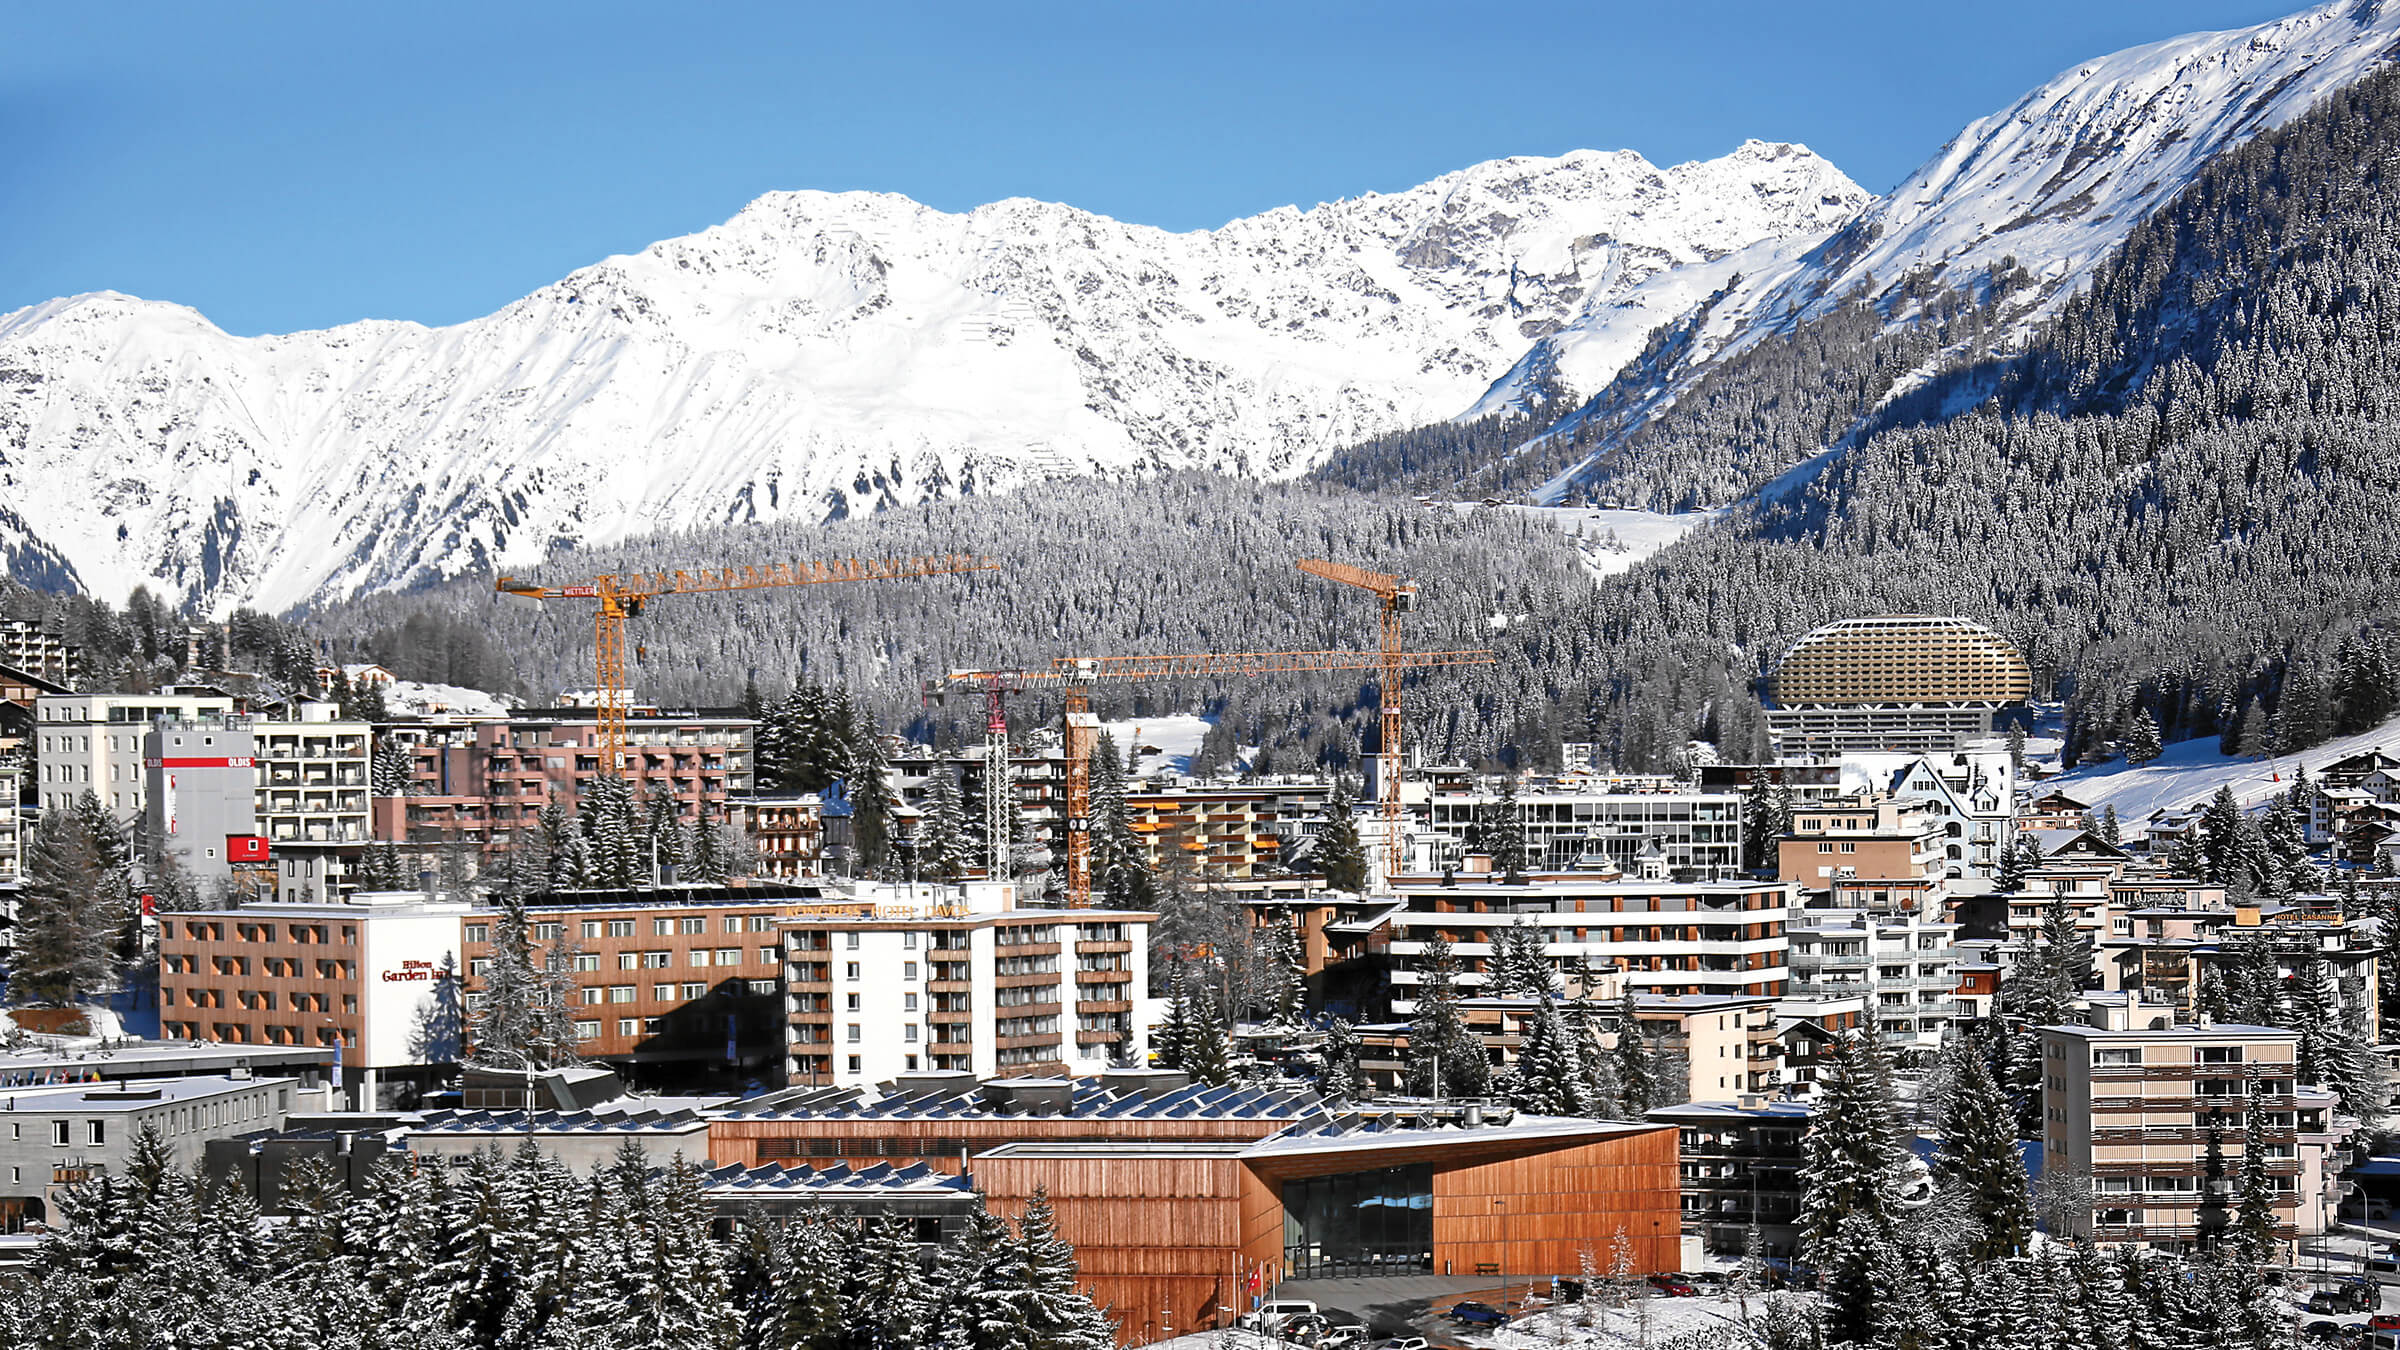 Davos, Switzerland in daytime